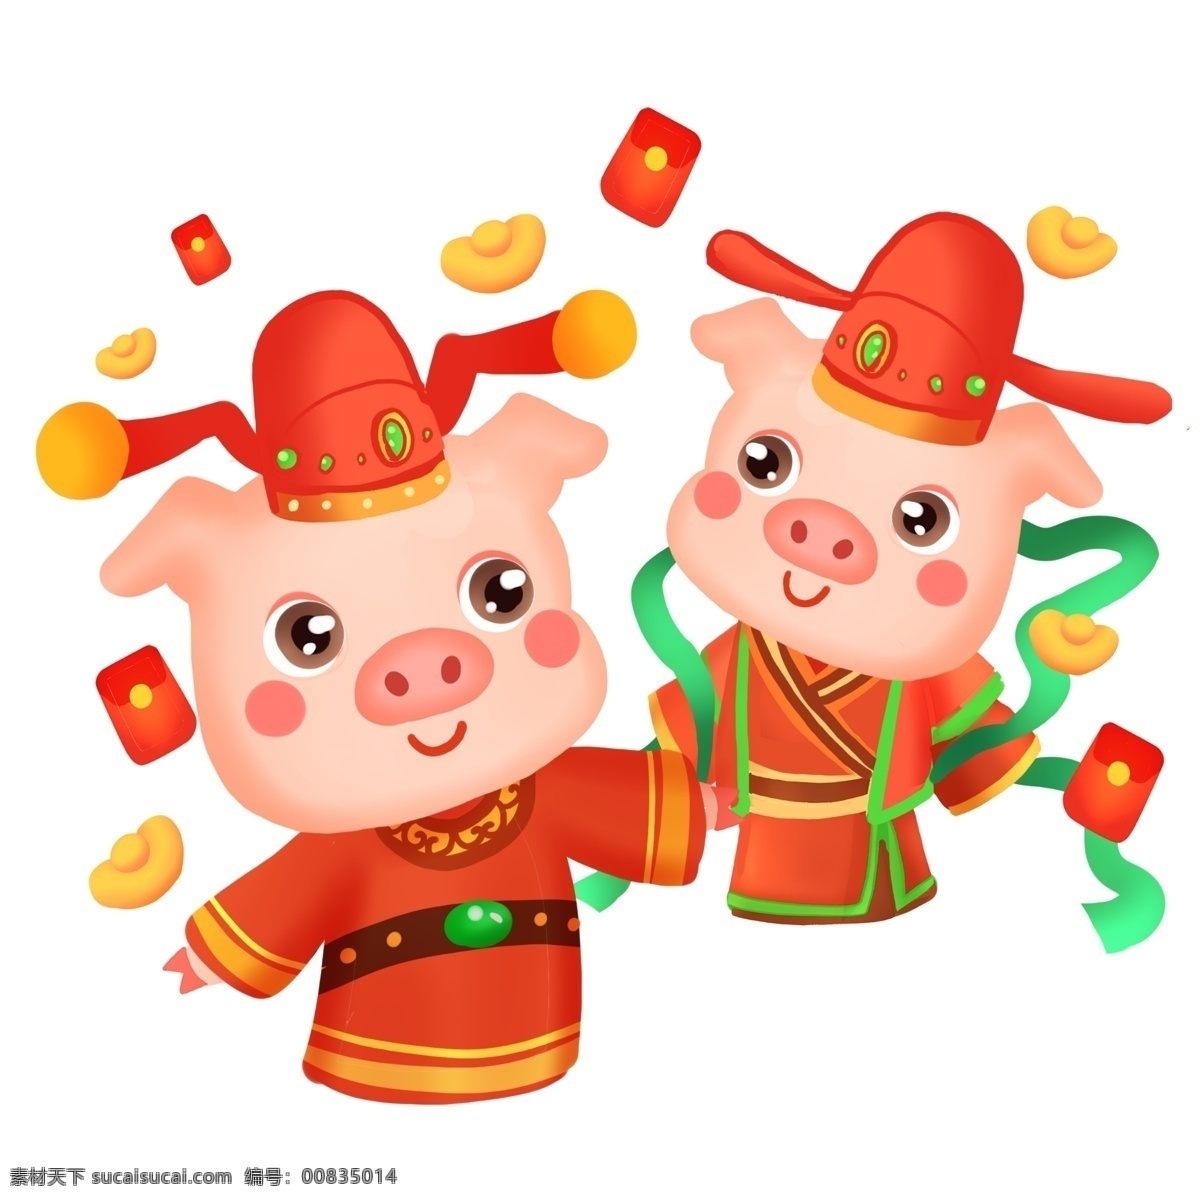 2019 猪 兄弟 财神 红包 红色 可爱 小清新 新年 猪年 小猪 元宝 暖色 卡通手绘